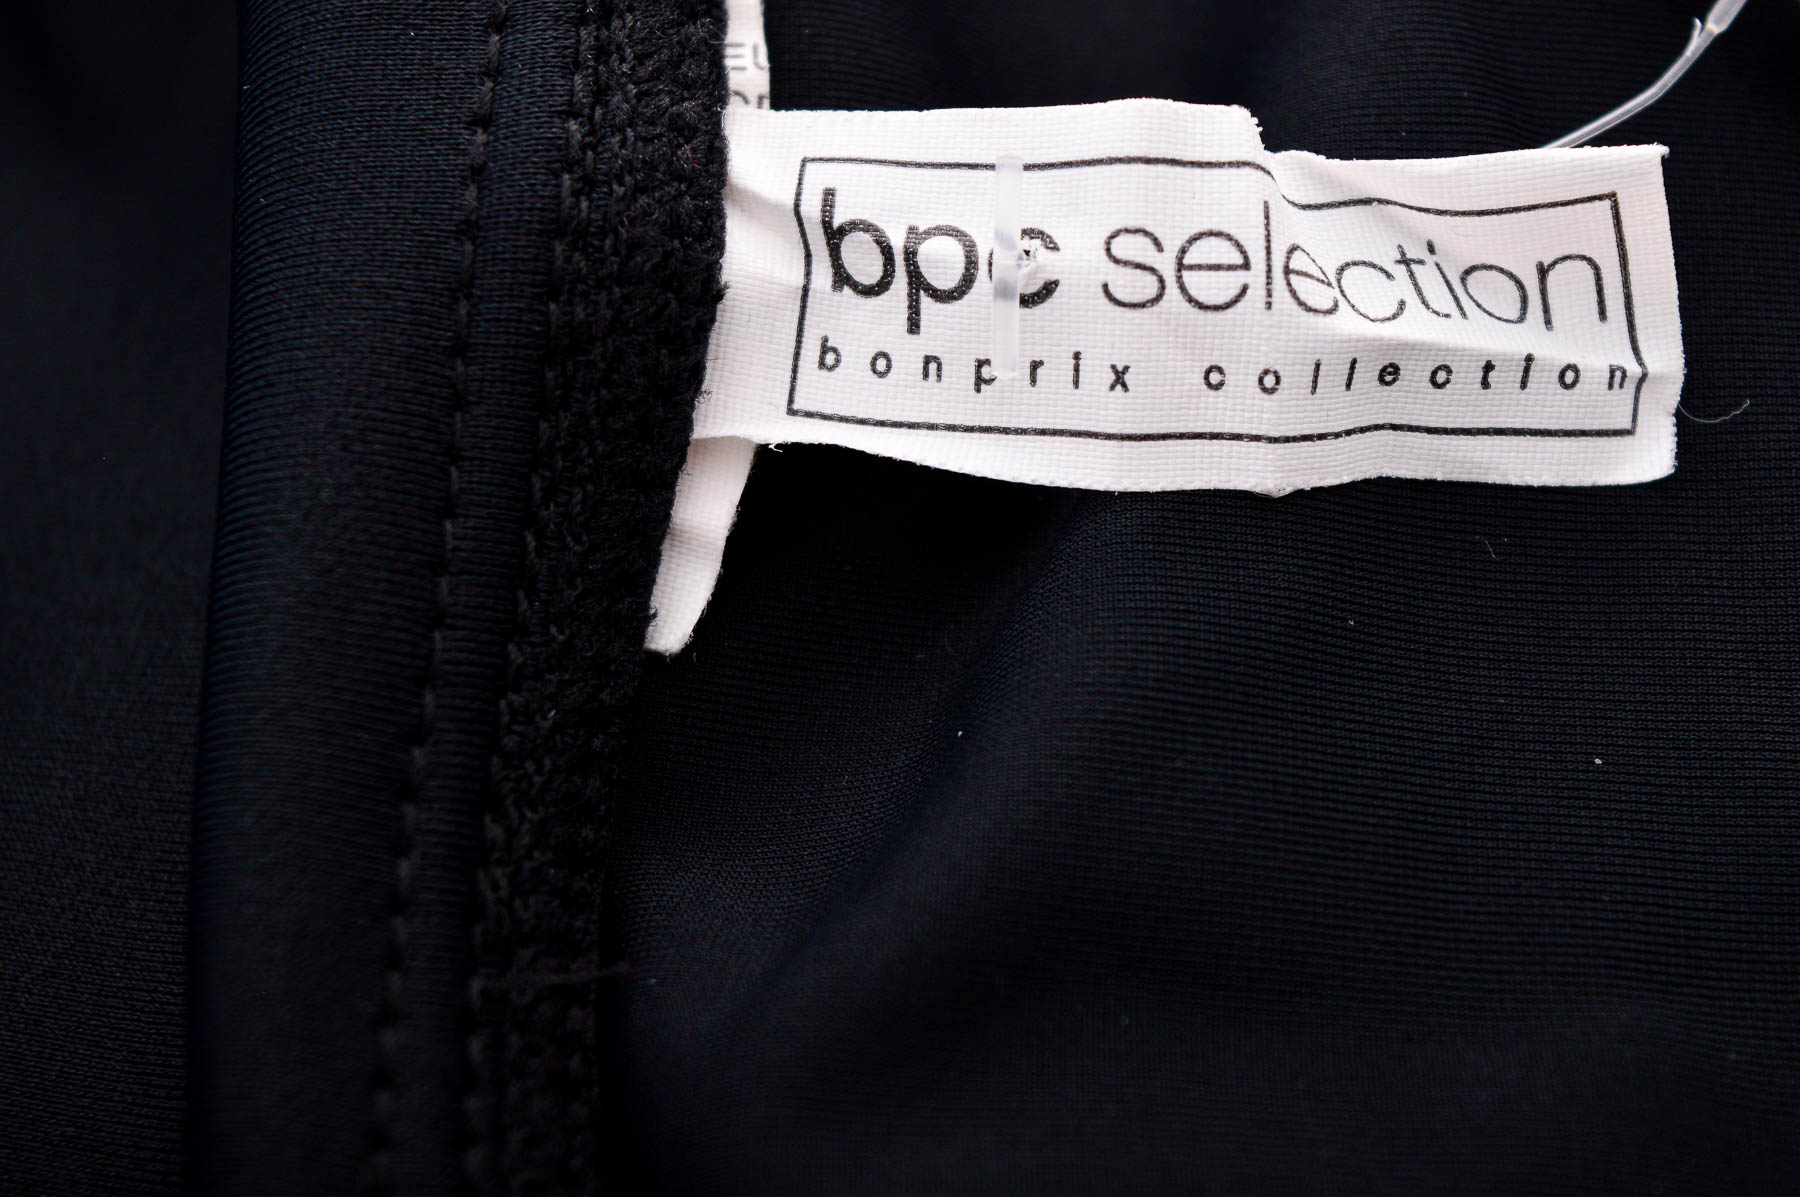 Φούστα παντελόνι - Bpc selection bonprix collection - 2